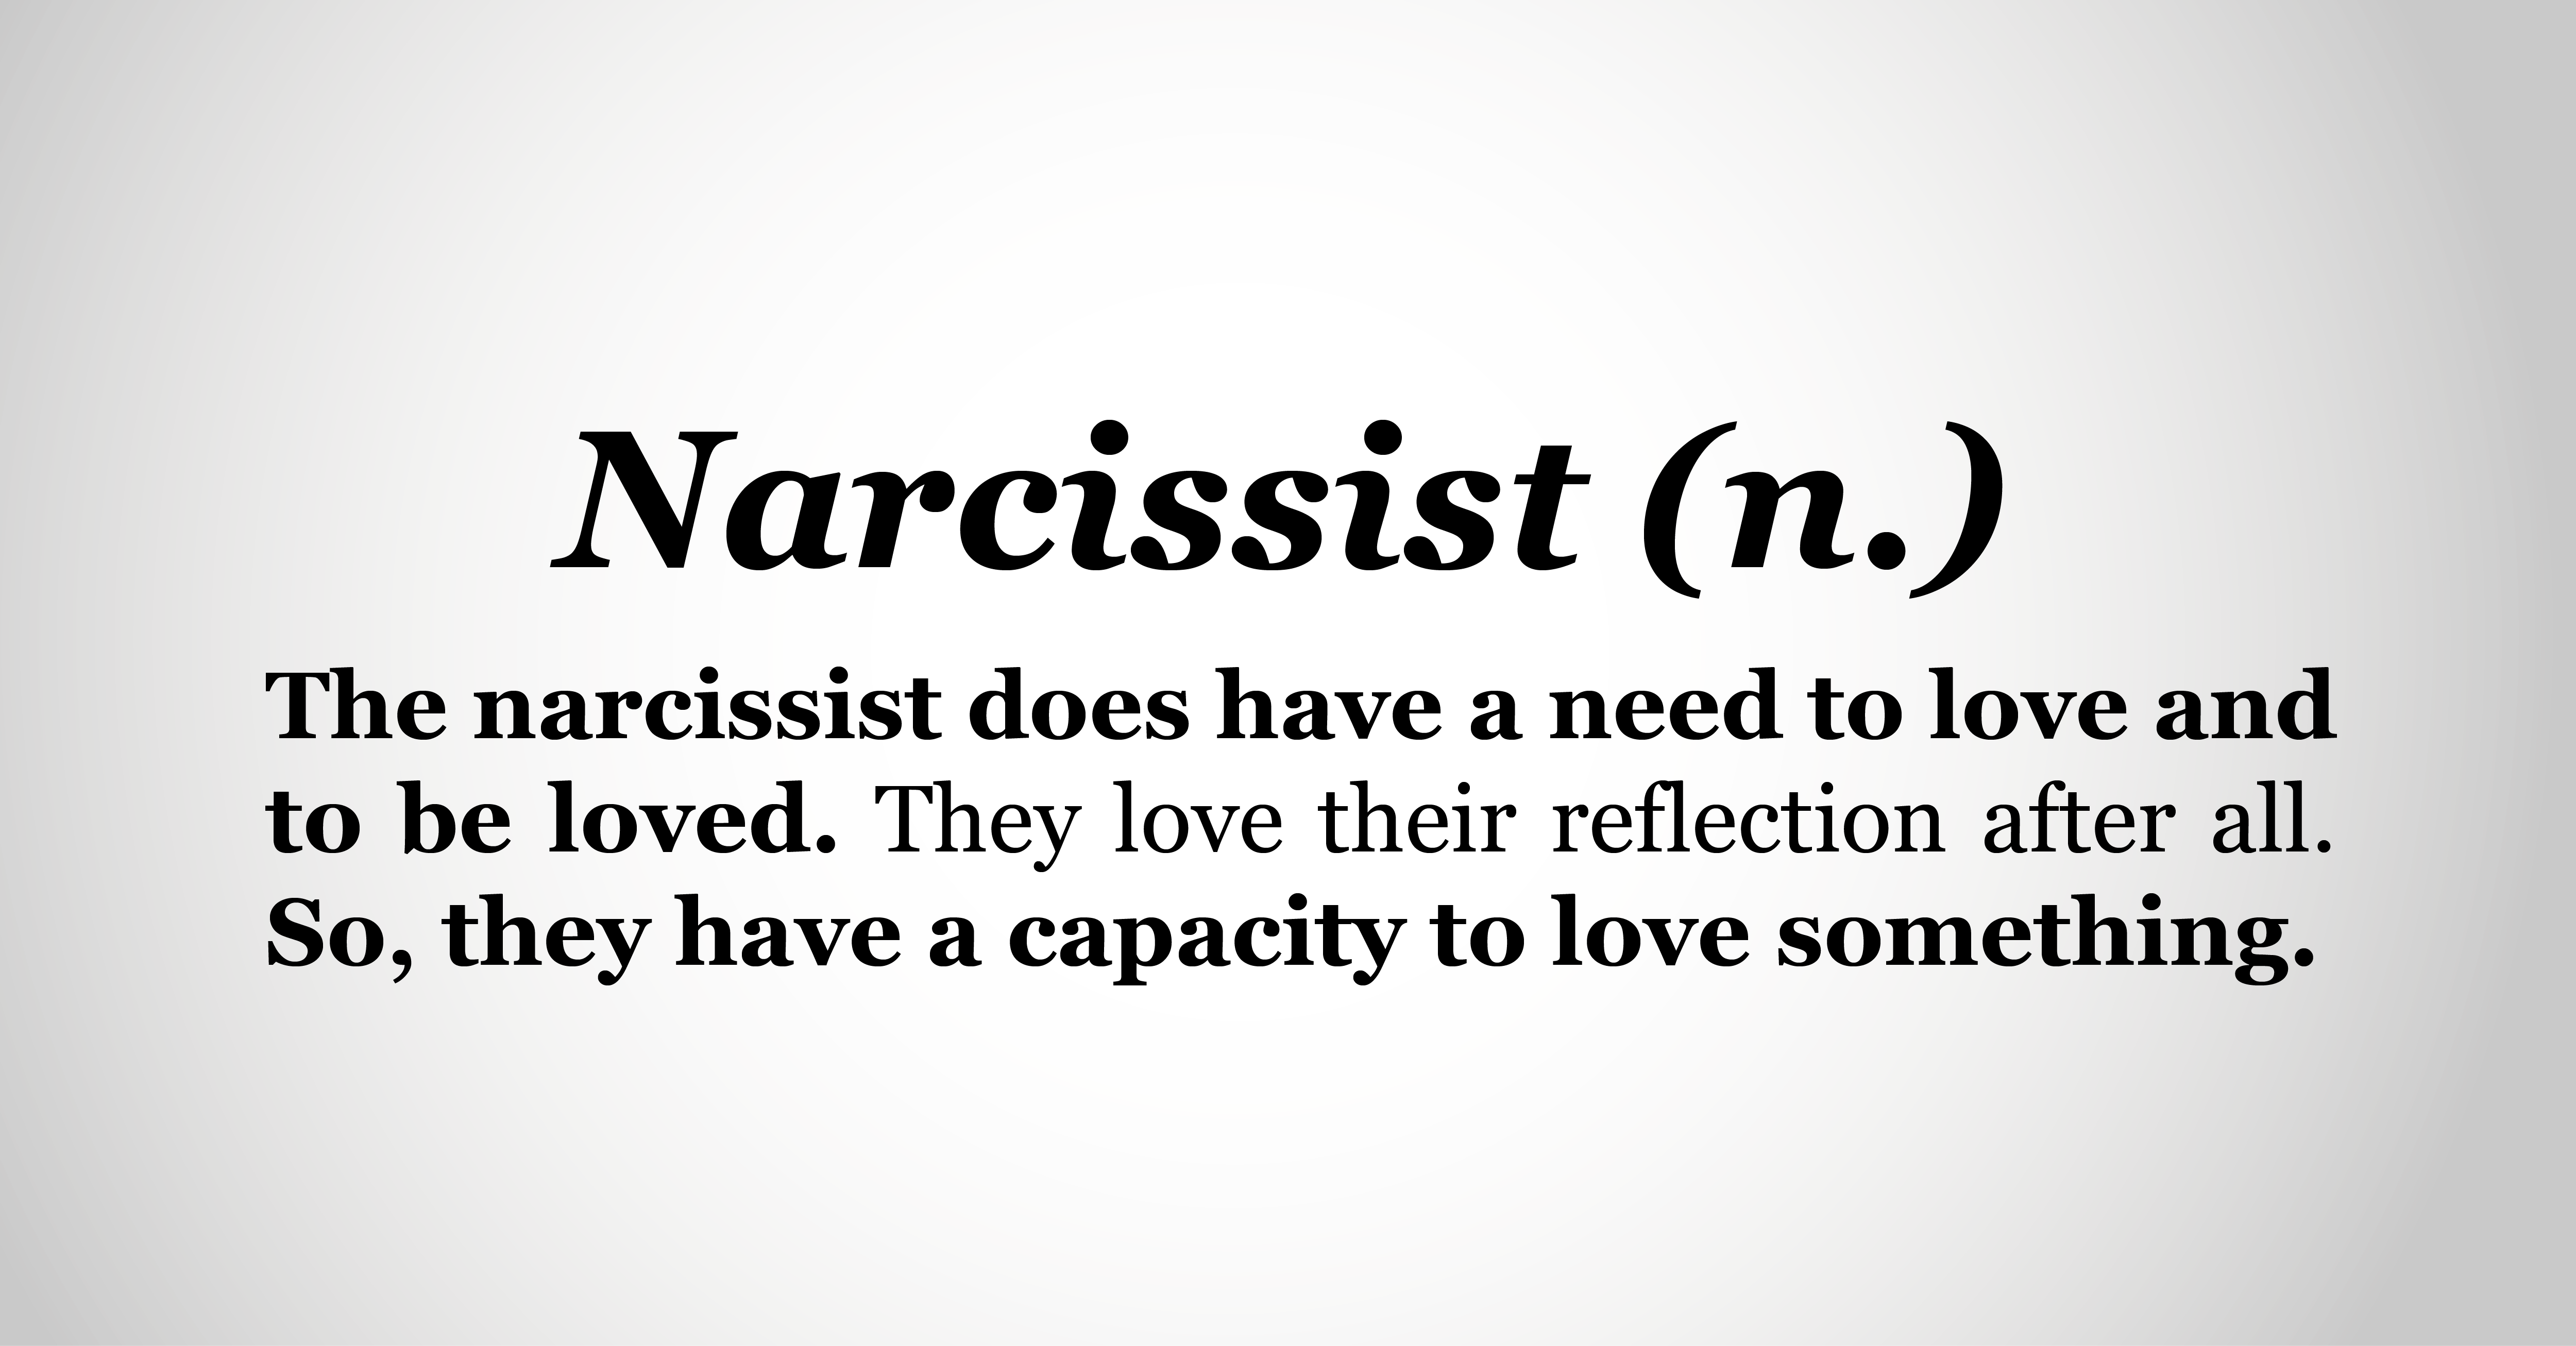 a narcissist